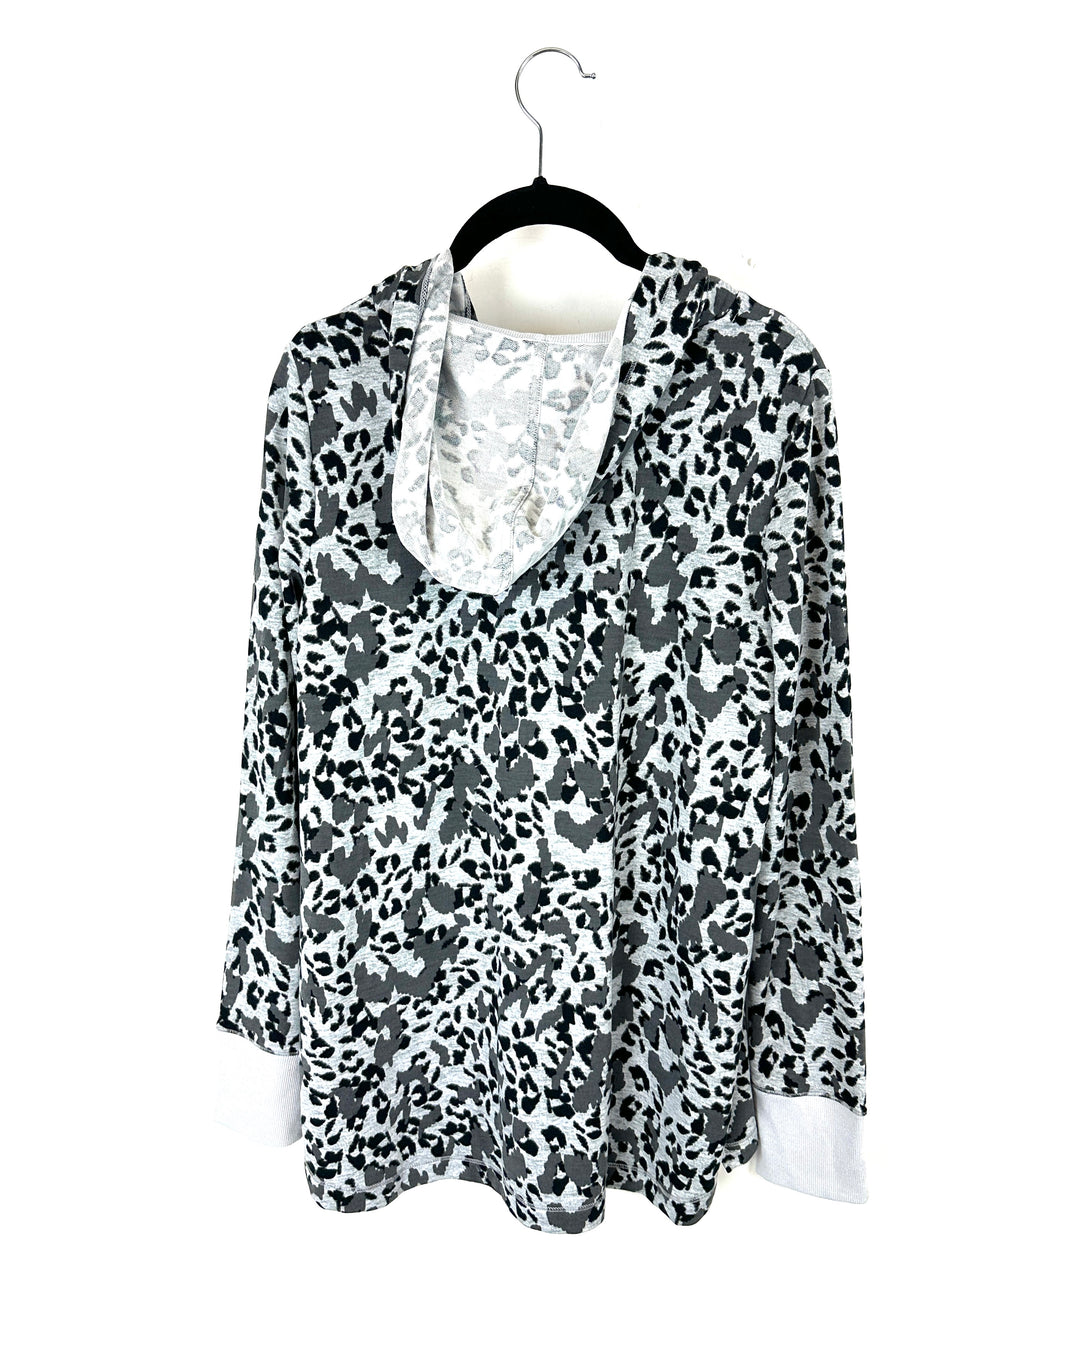 Grey And Black Cheetah Printed Shirt - Small/Medium